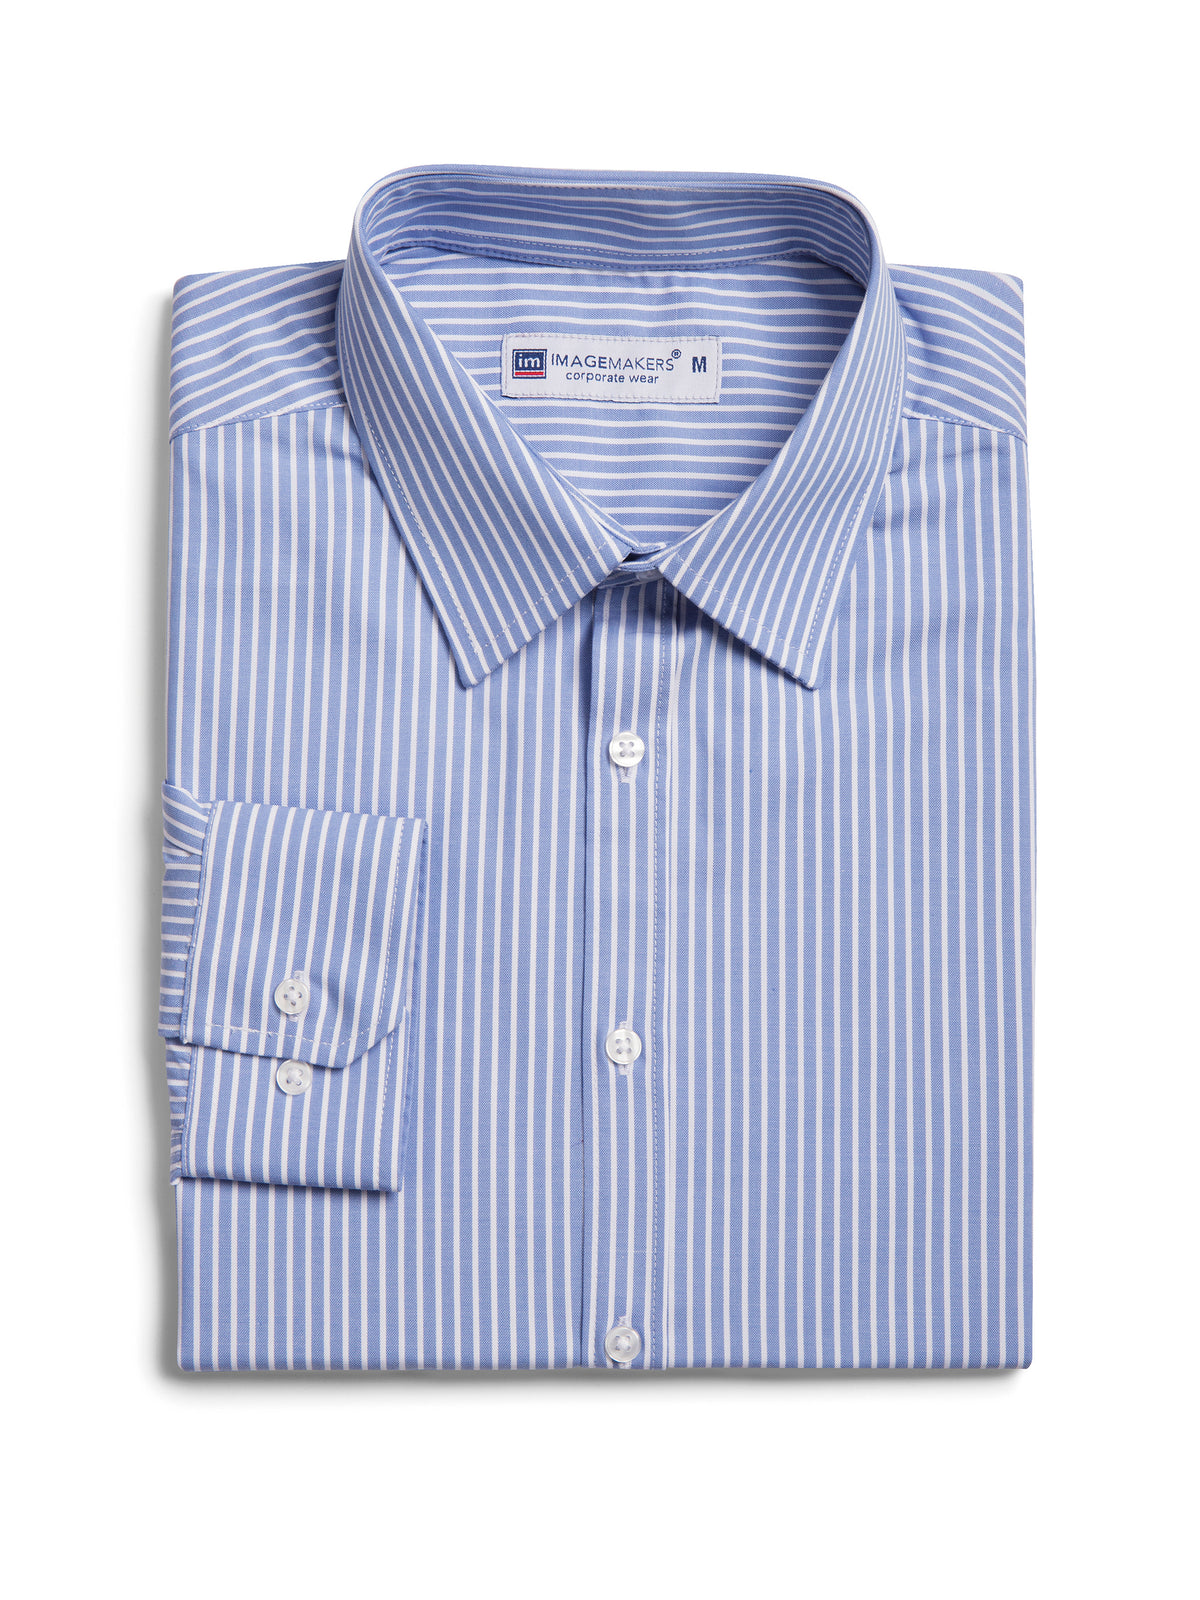 Dean slim fit cotton shirt - blue stripe